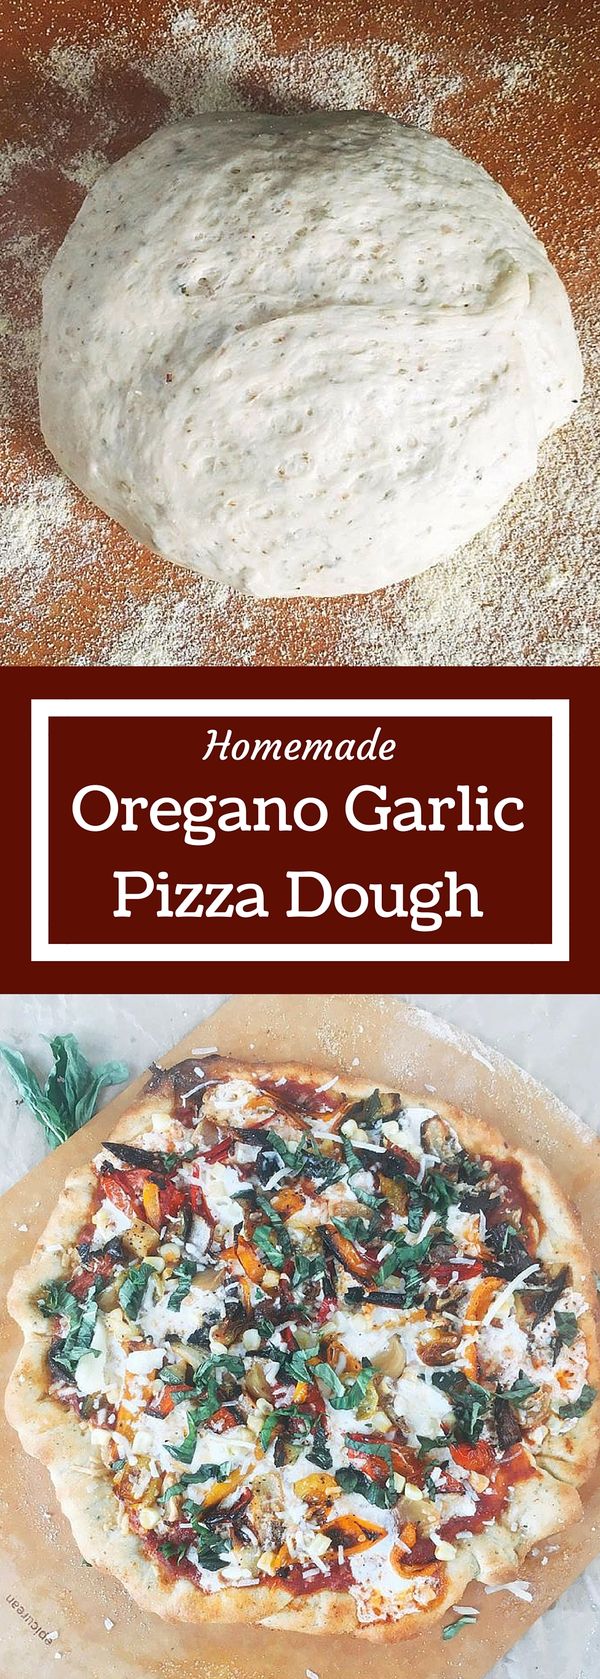 Oregano Garlic Pizza Dough